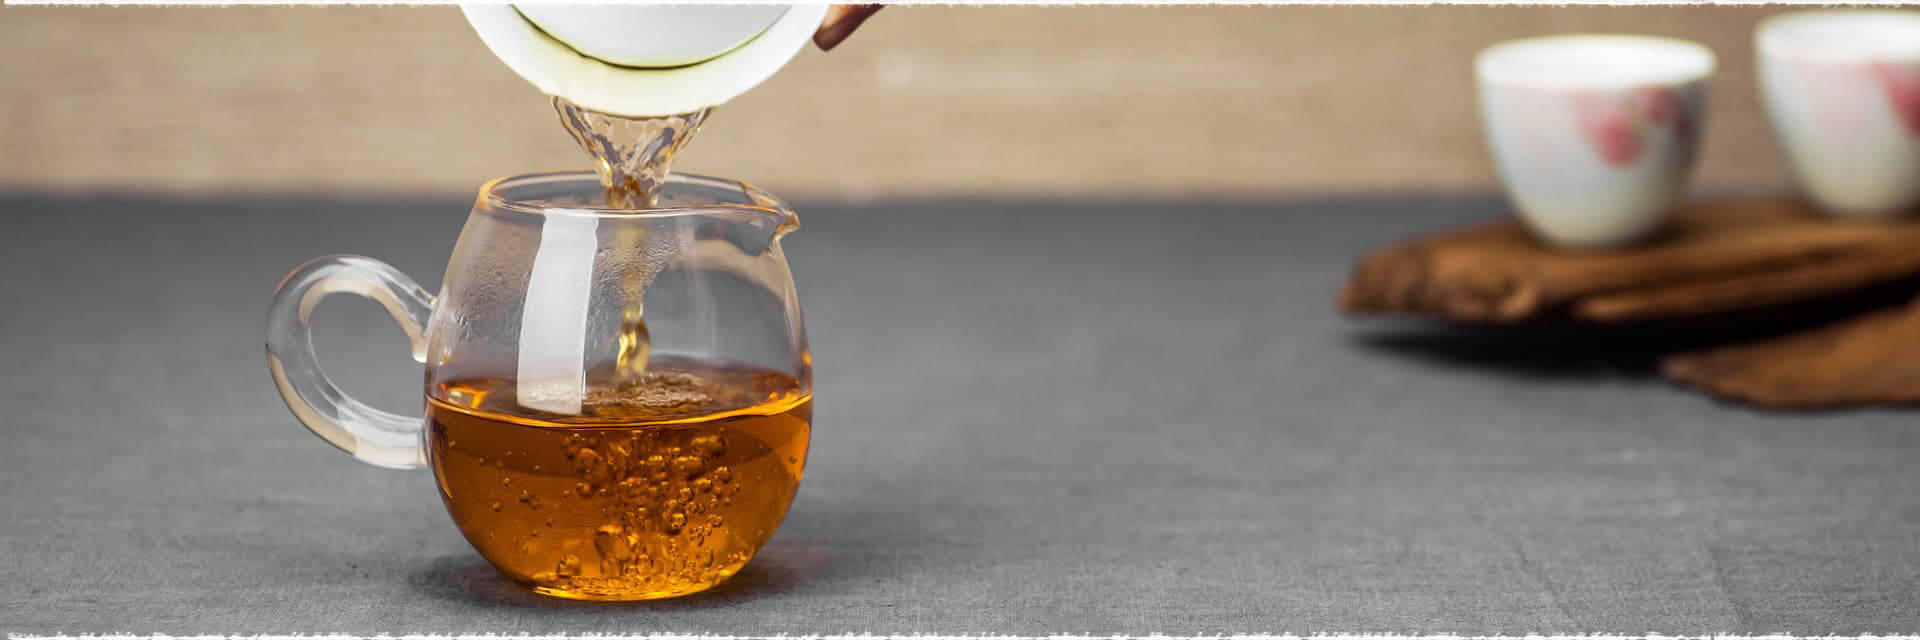 Des extraits de thé blanc induisent une activité brûle graisse et inhibent le stockage des graisses